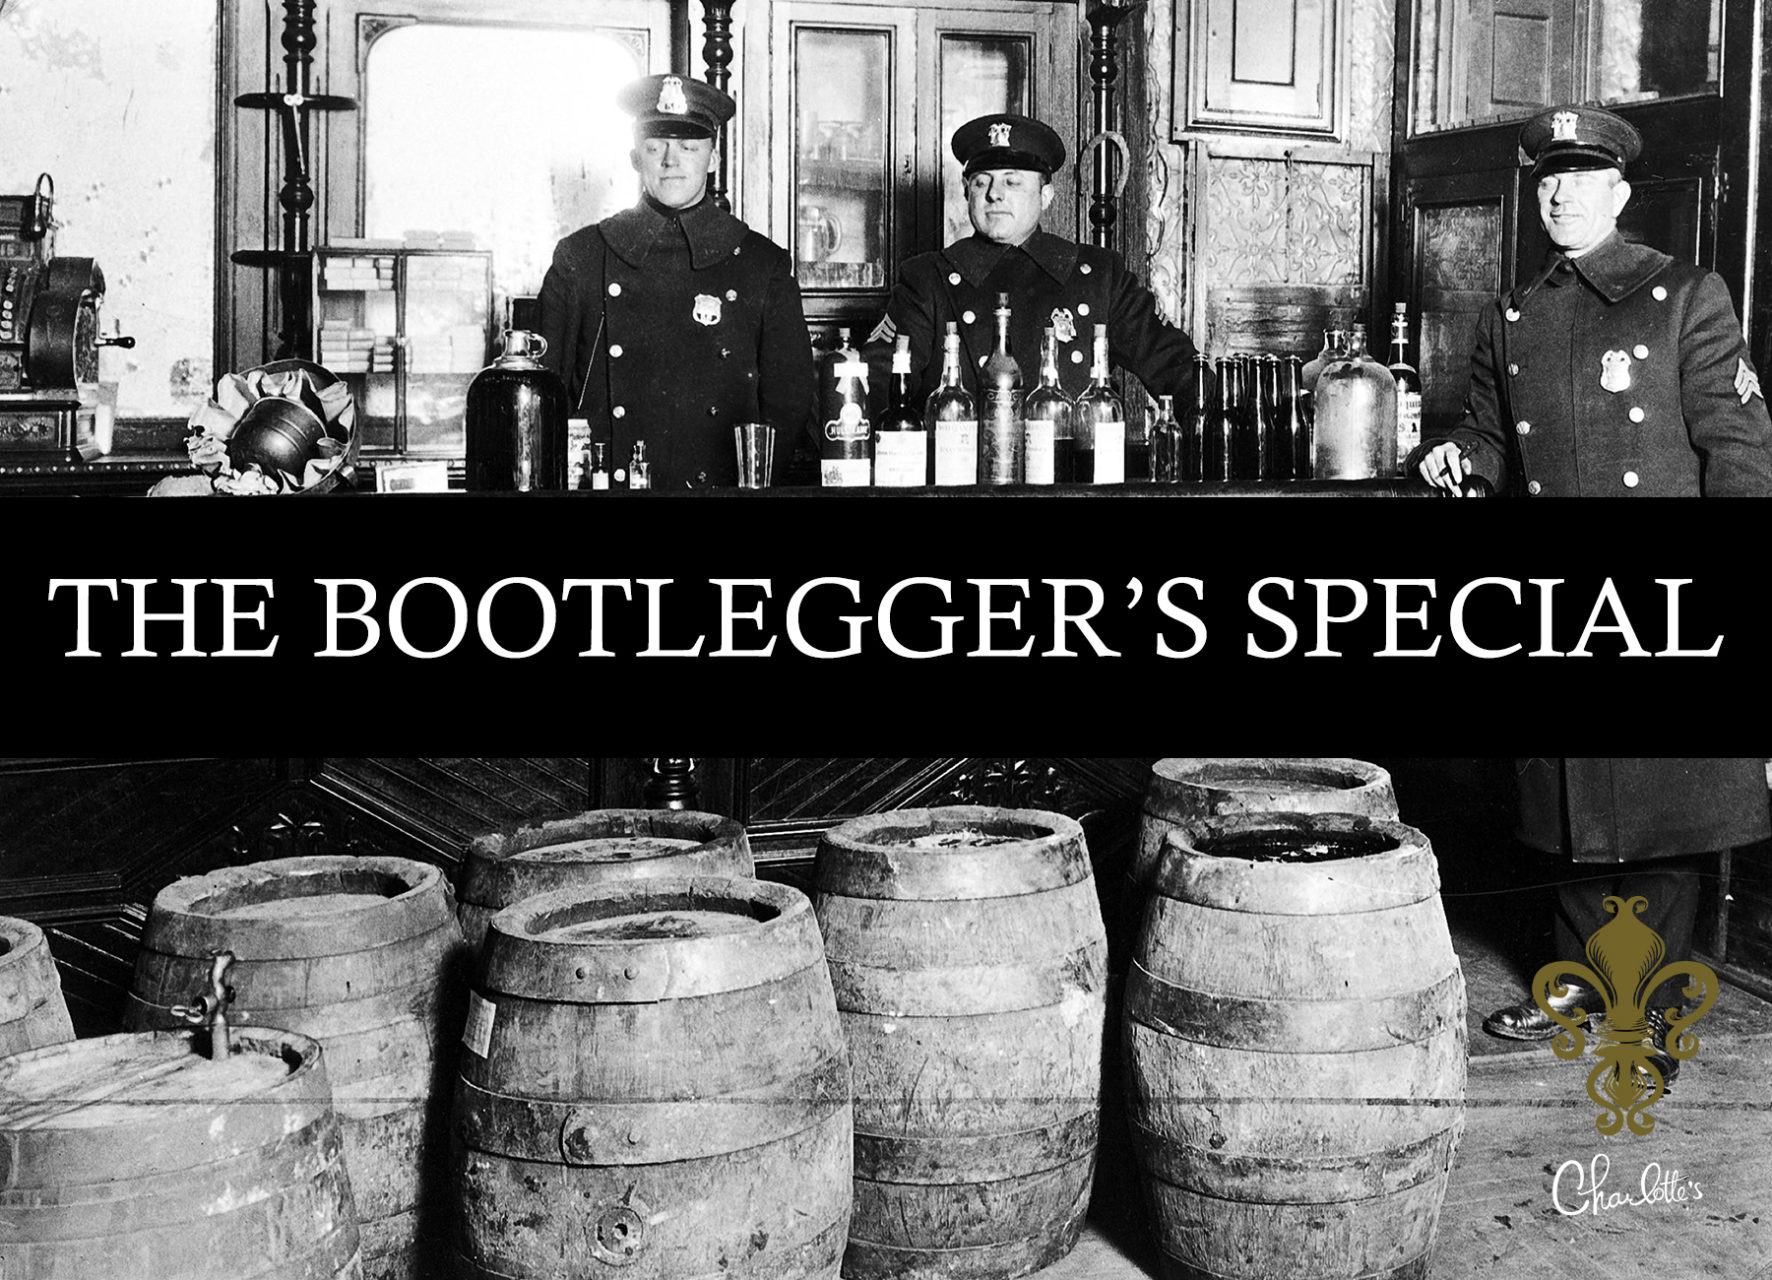 The Bootlegger's Special